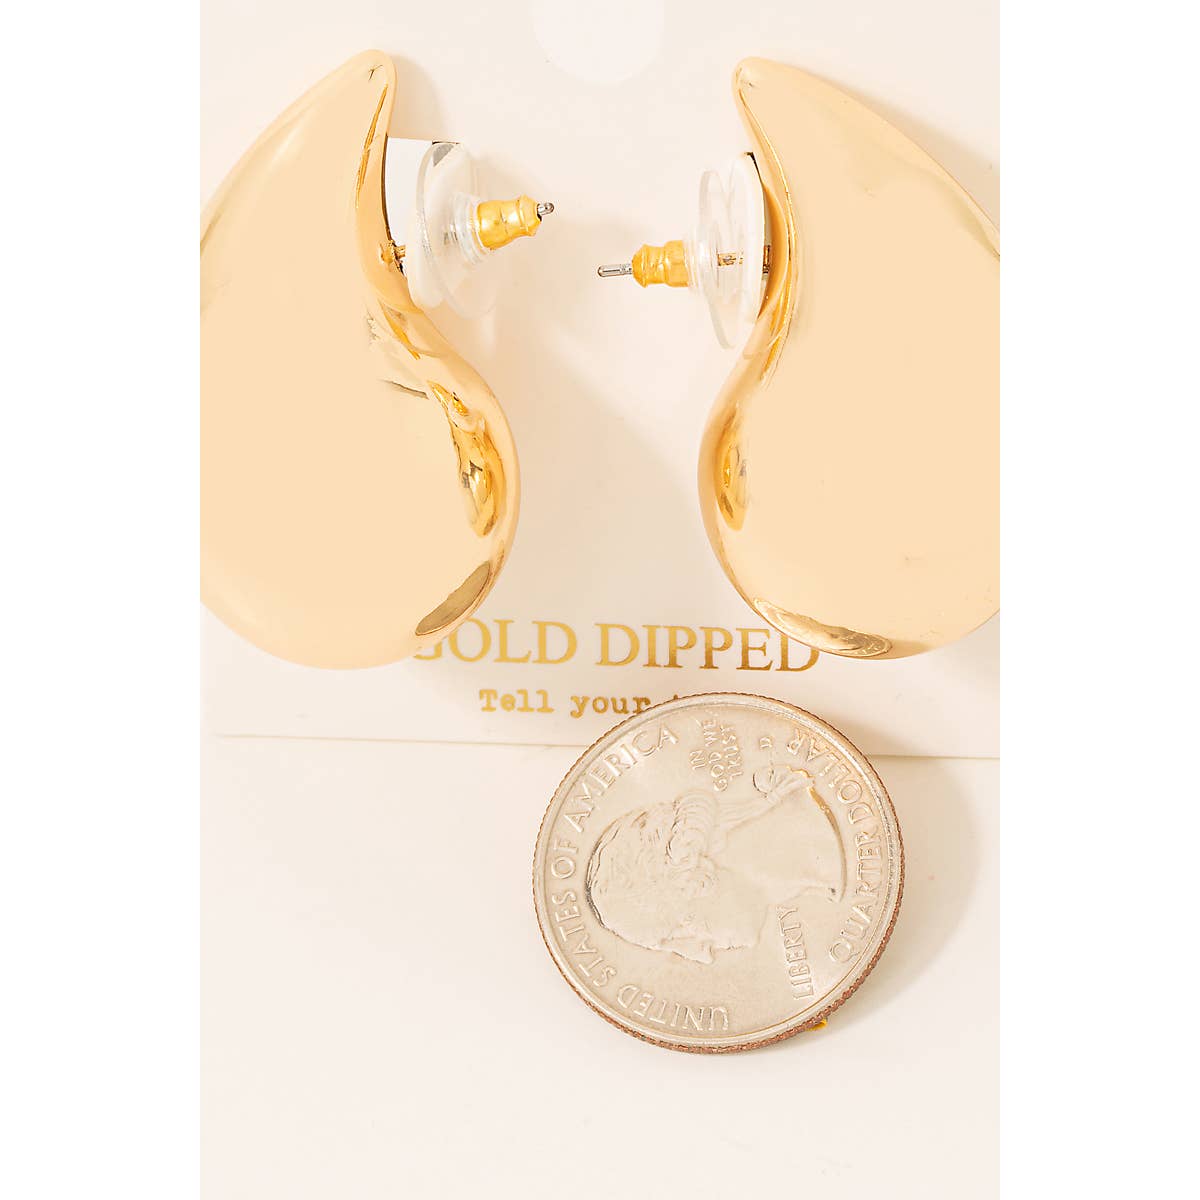 Gold Dipped Large Teardrop Earrings